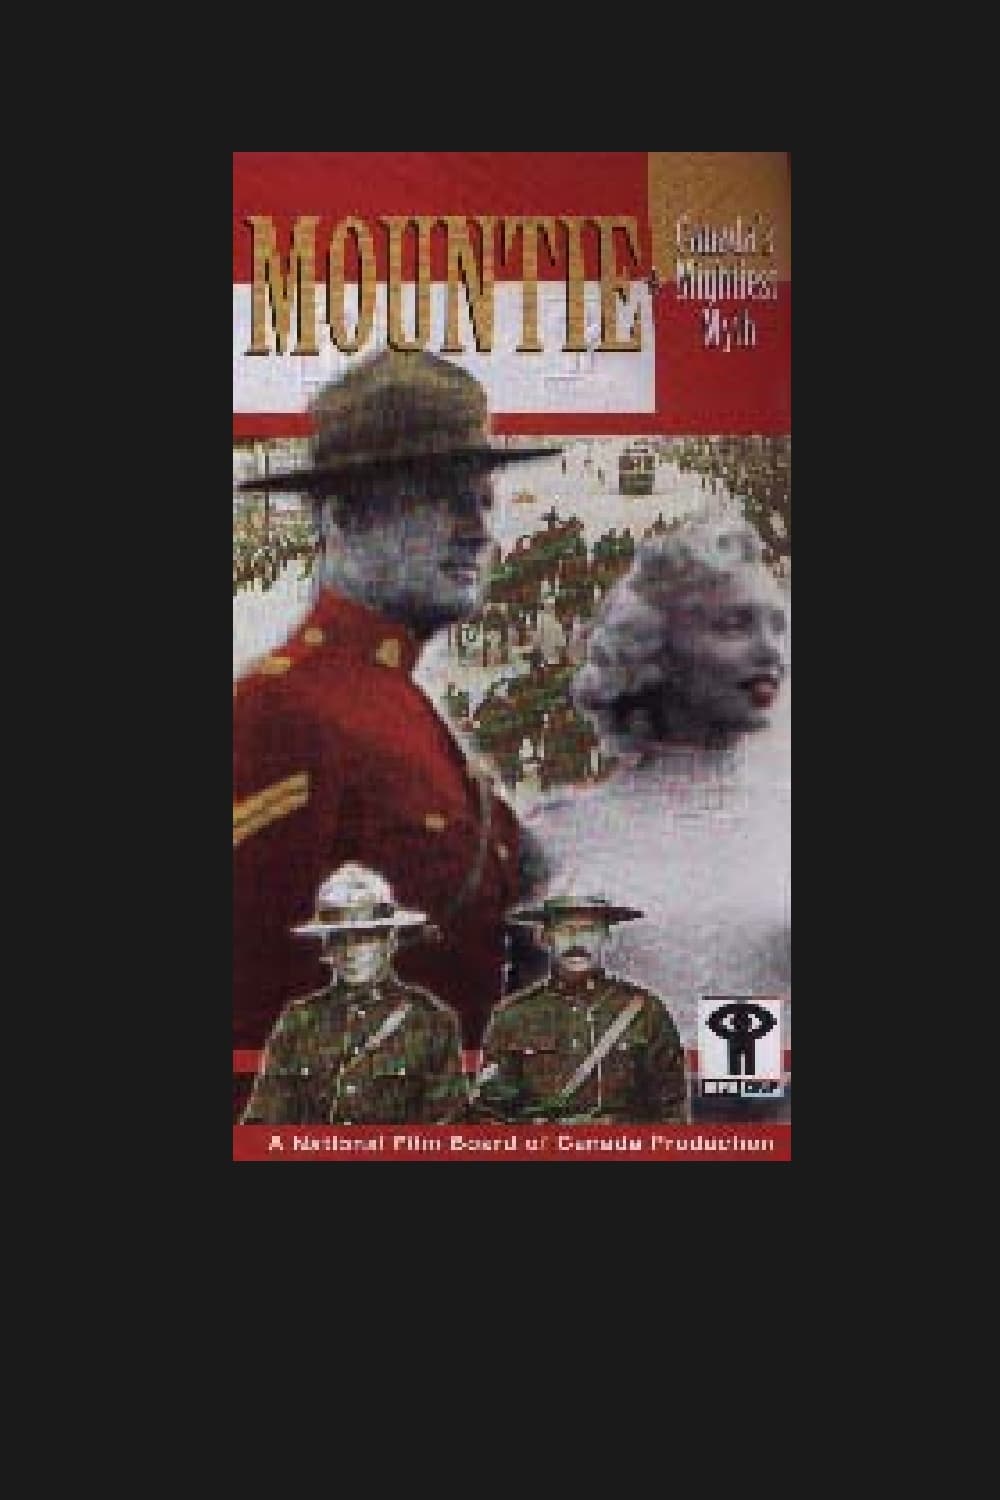 Mountie: Canada's Mightiest Myth